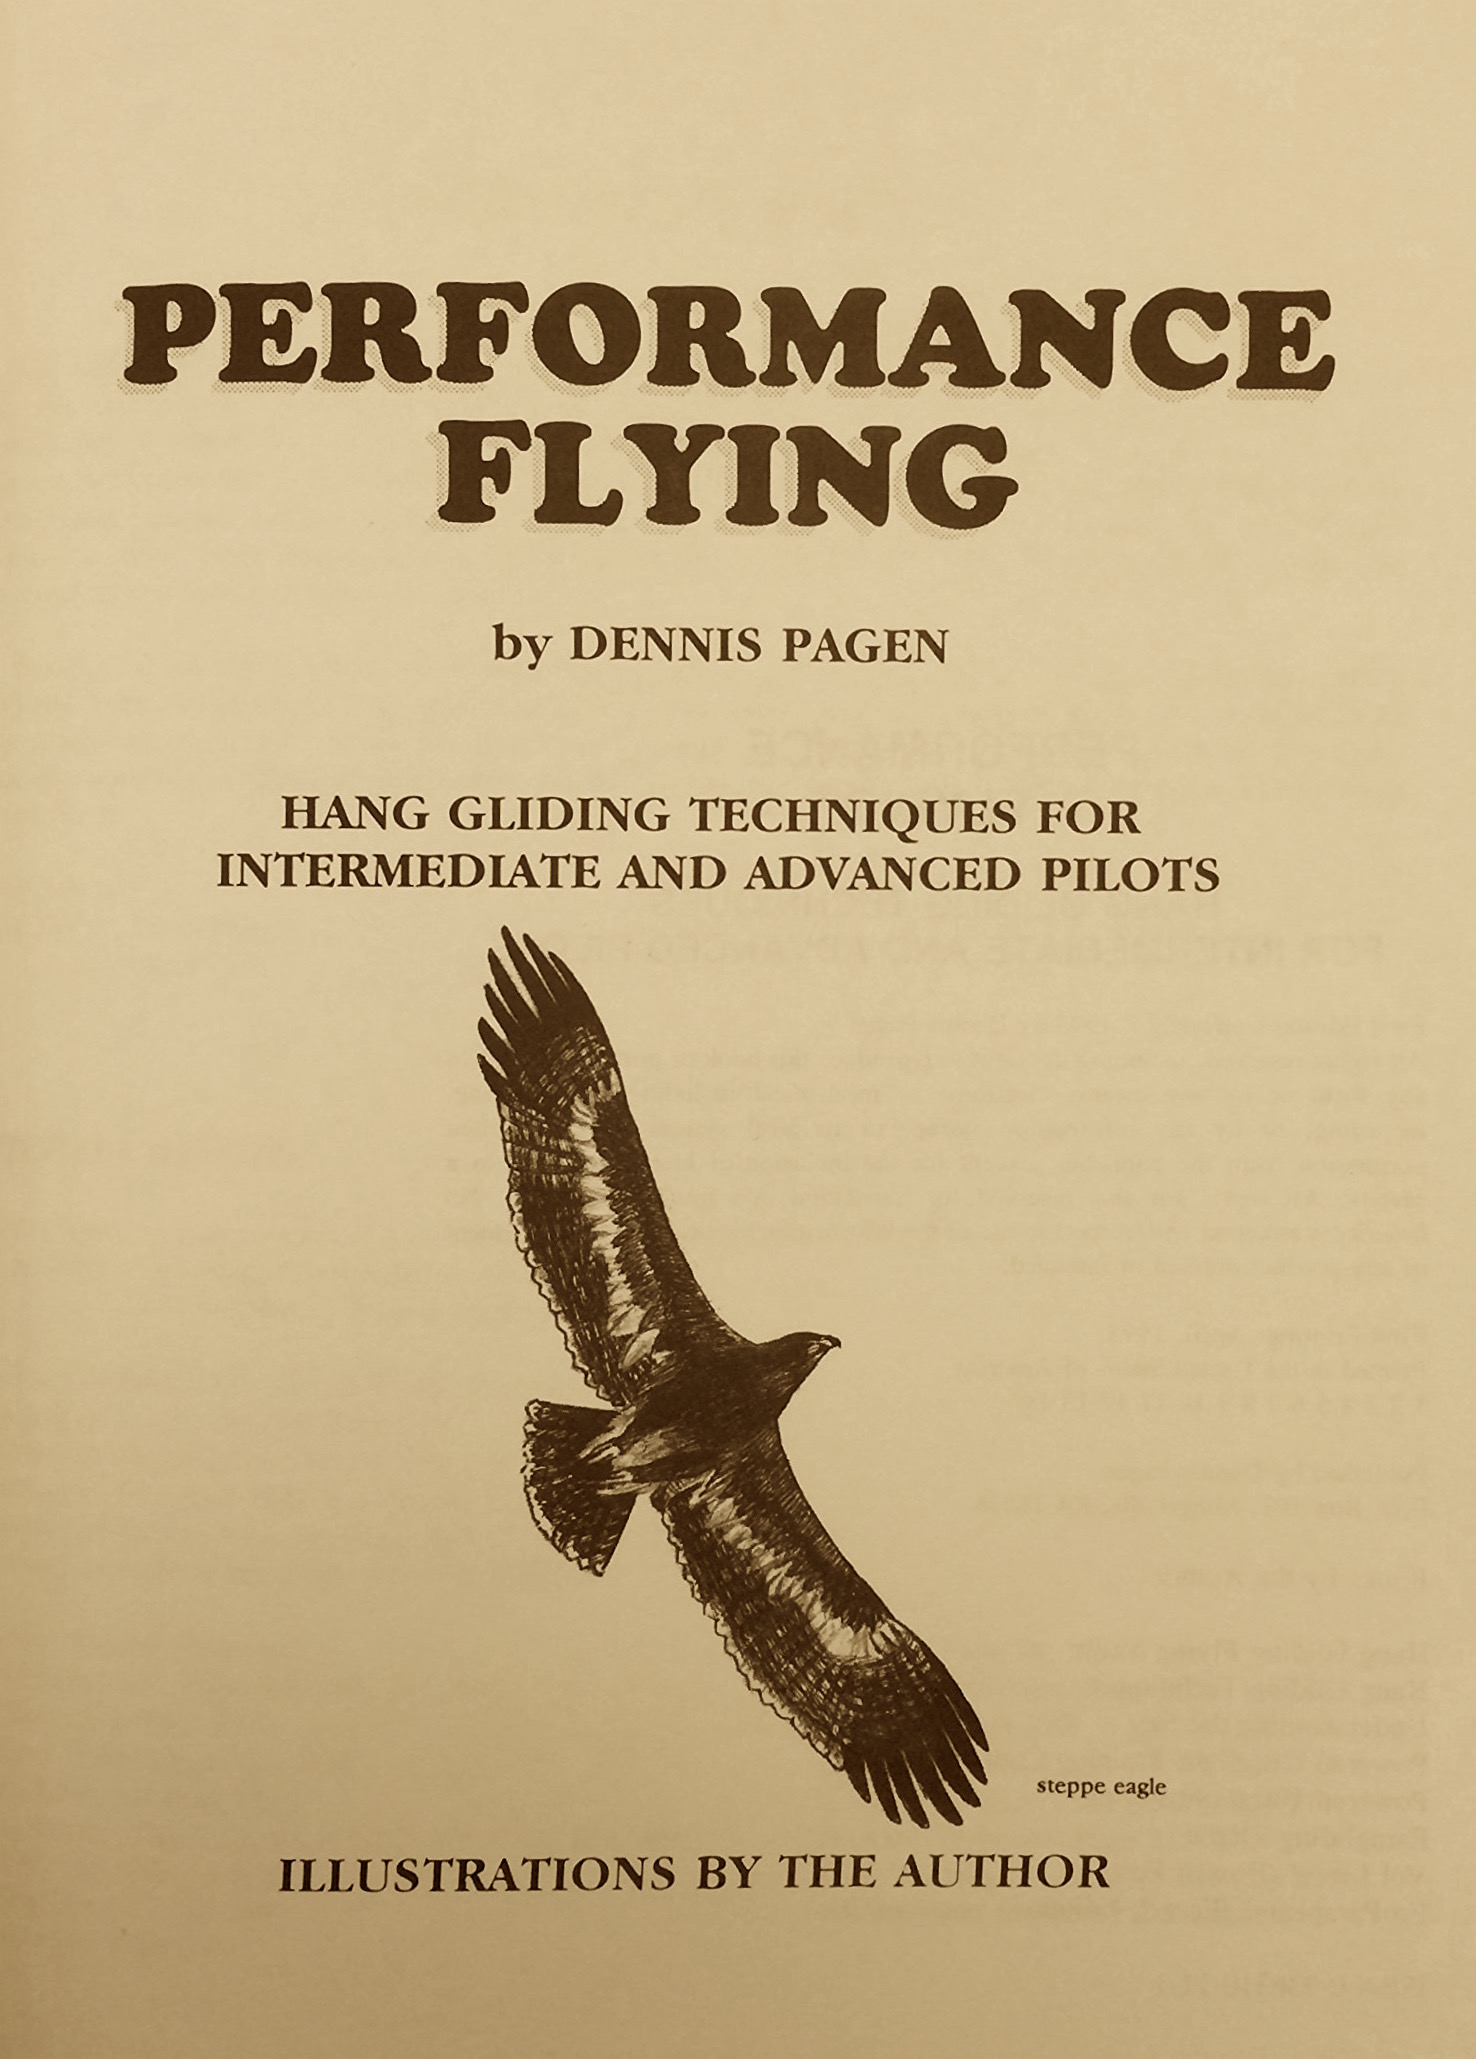 Д.Пегин "Performance flying" (Русское издание)